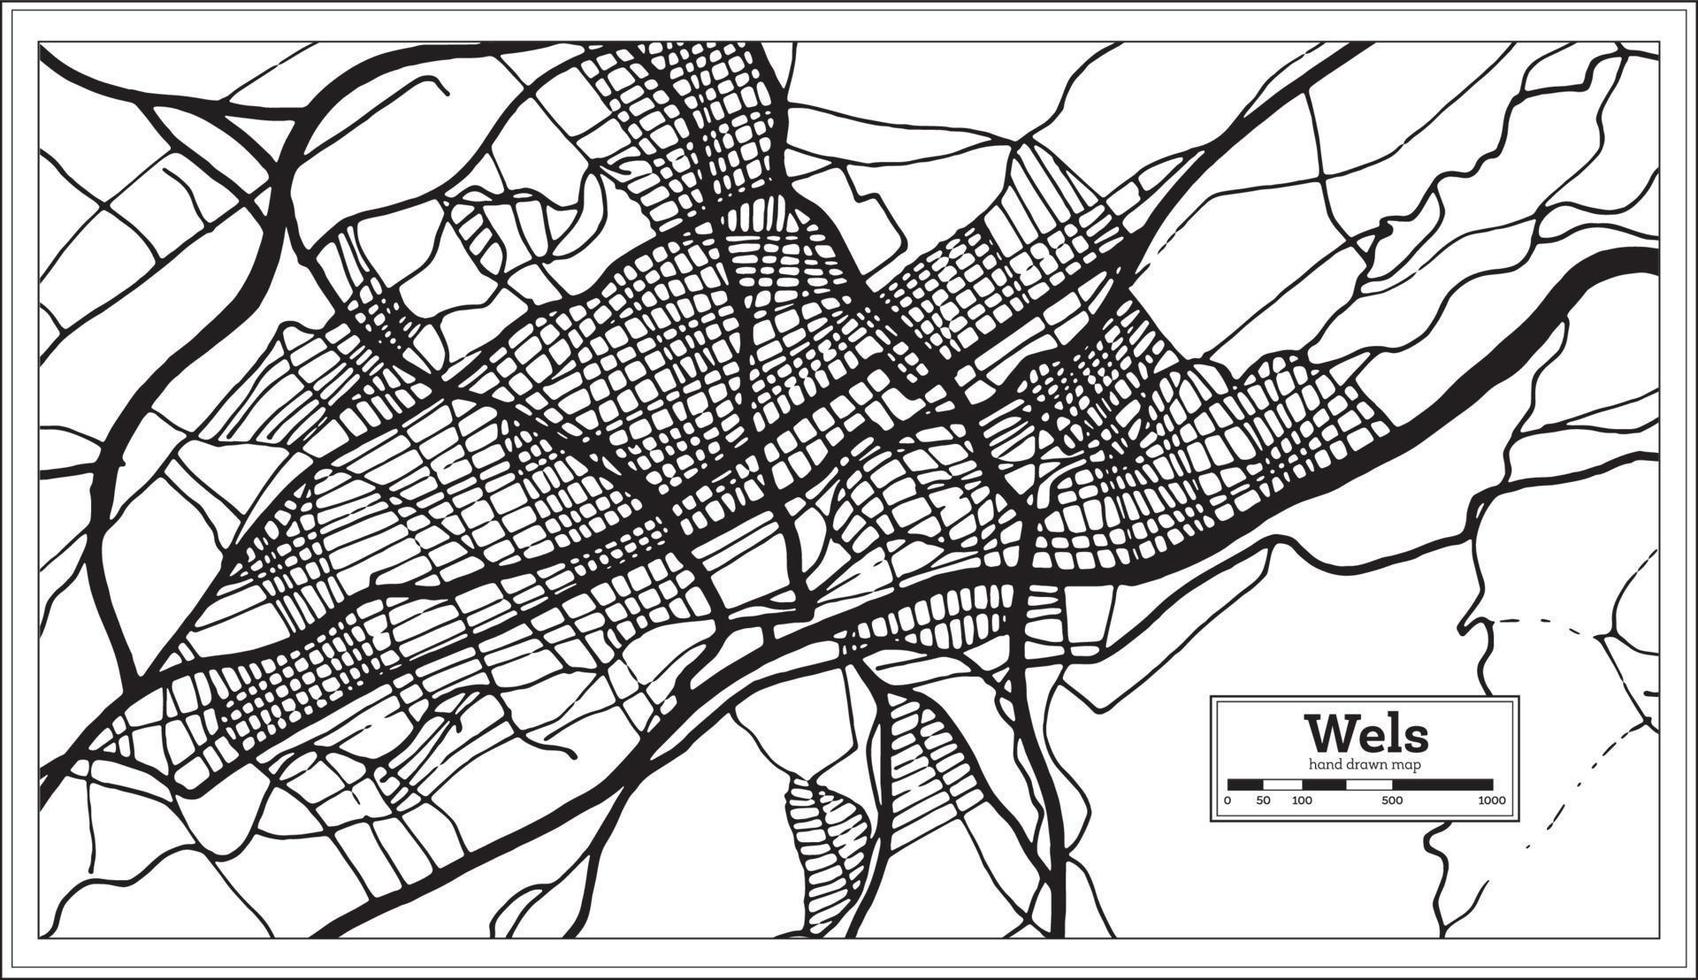 wels österrike stad Karta i svart och vit Färg i retro stil. översikt Karta. vektor